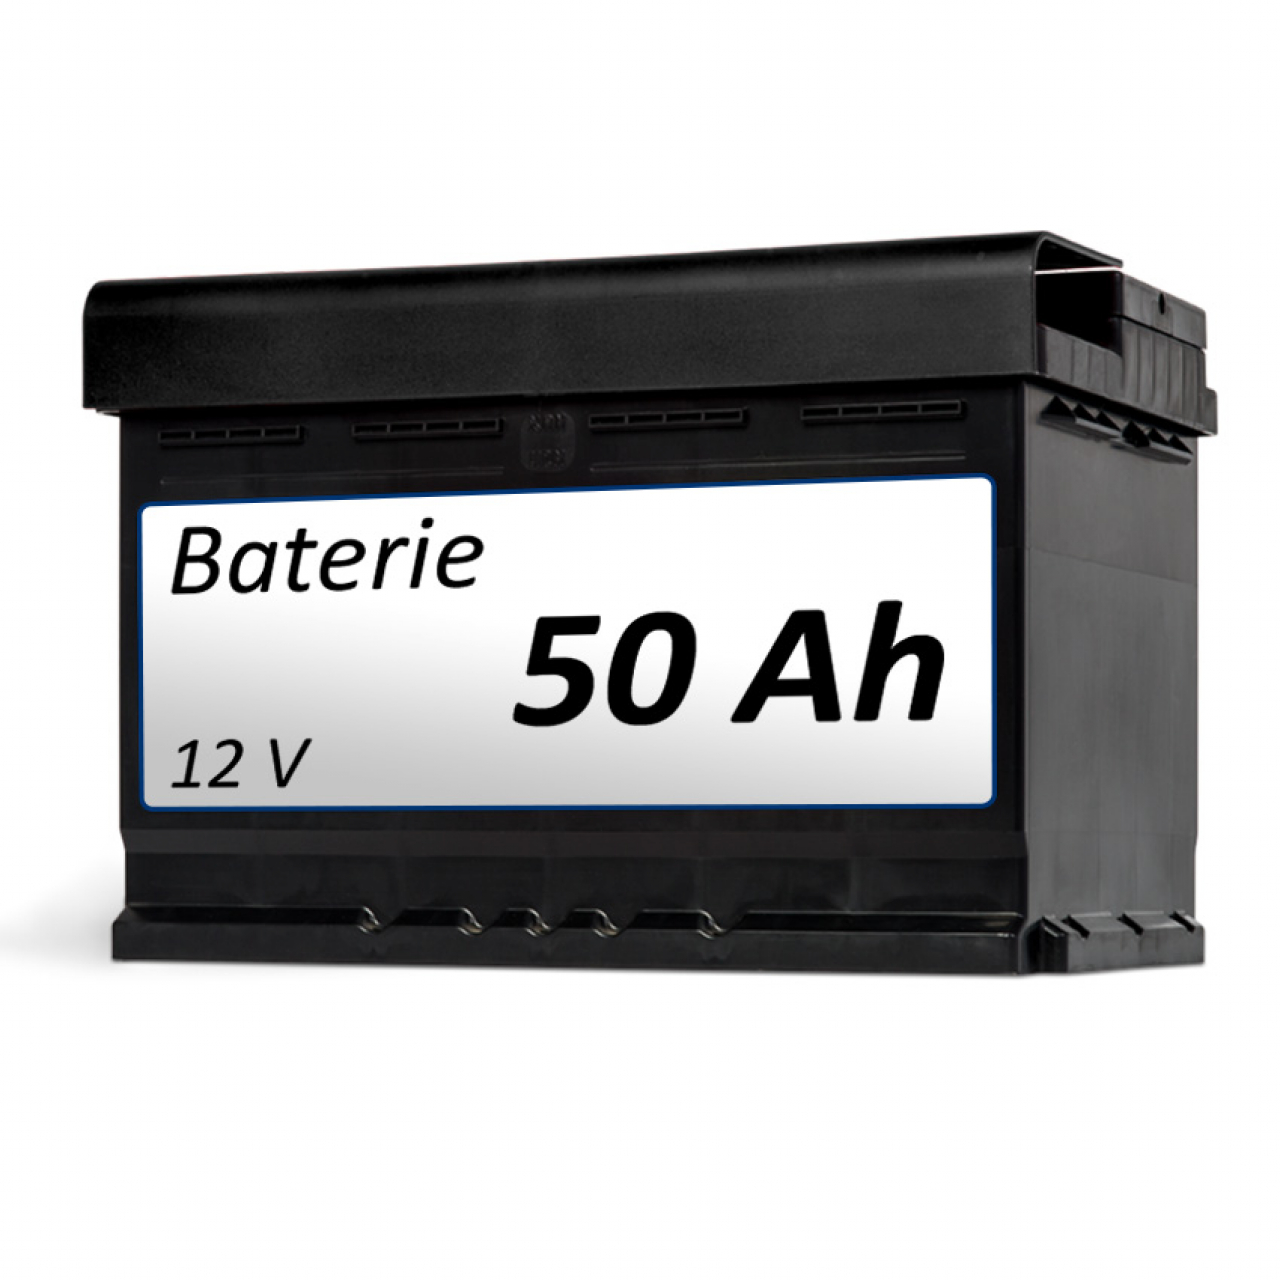 Baterie Baterie 50 Ah - k vozíku foto